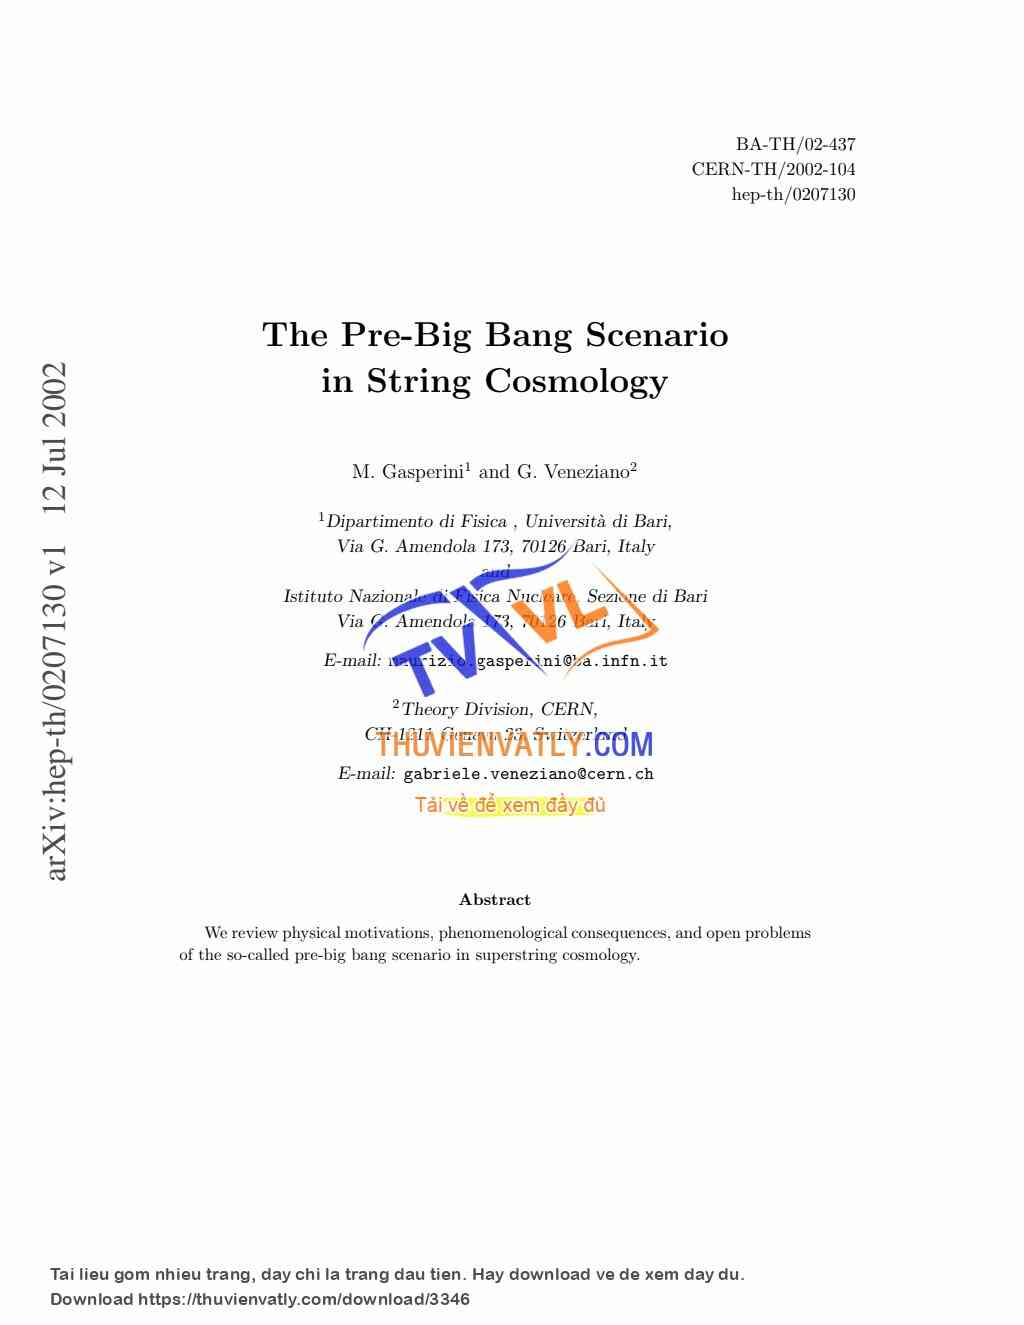 The Pre-Big Bang Scenario in String Cosmology